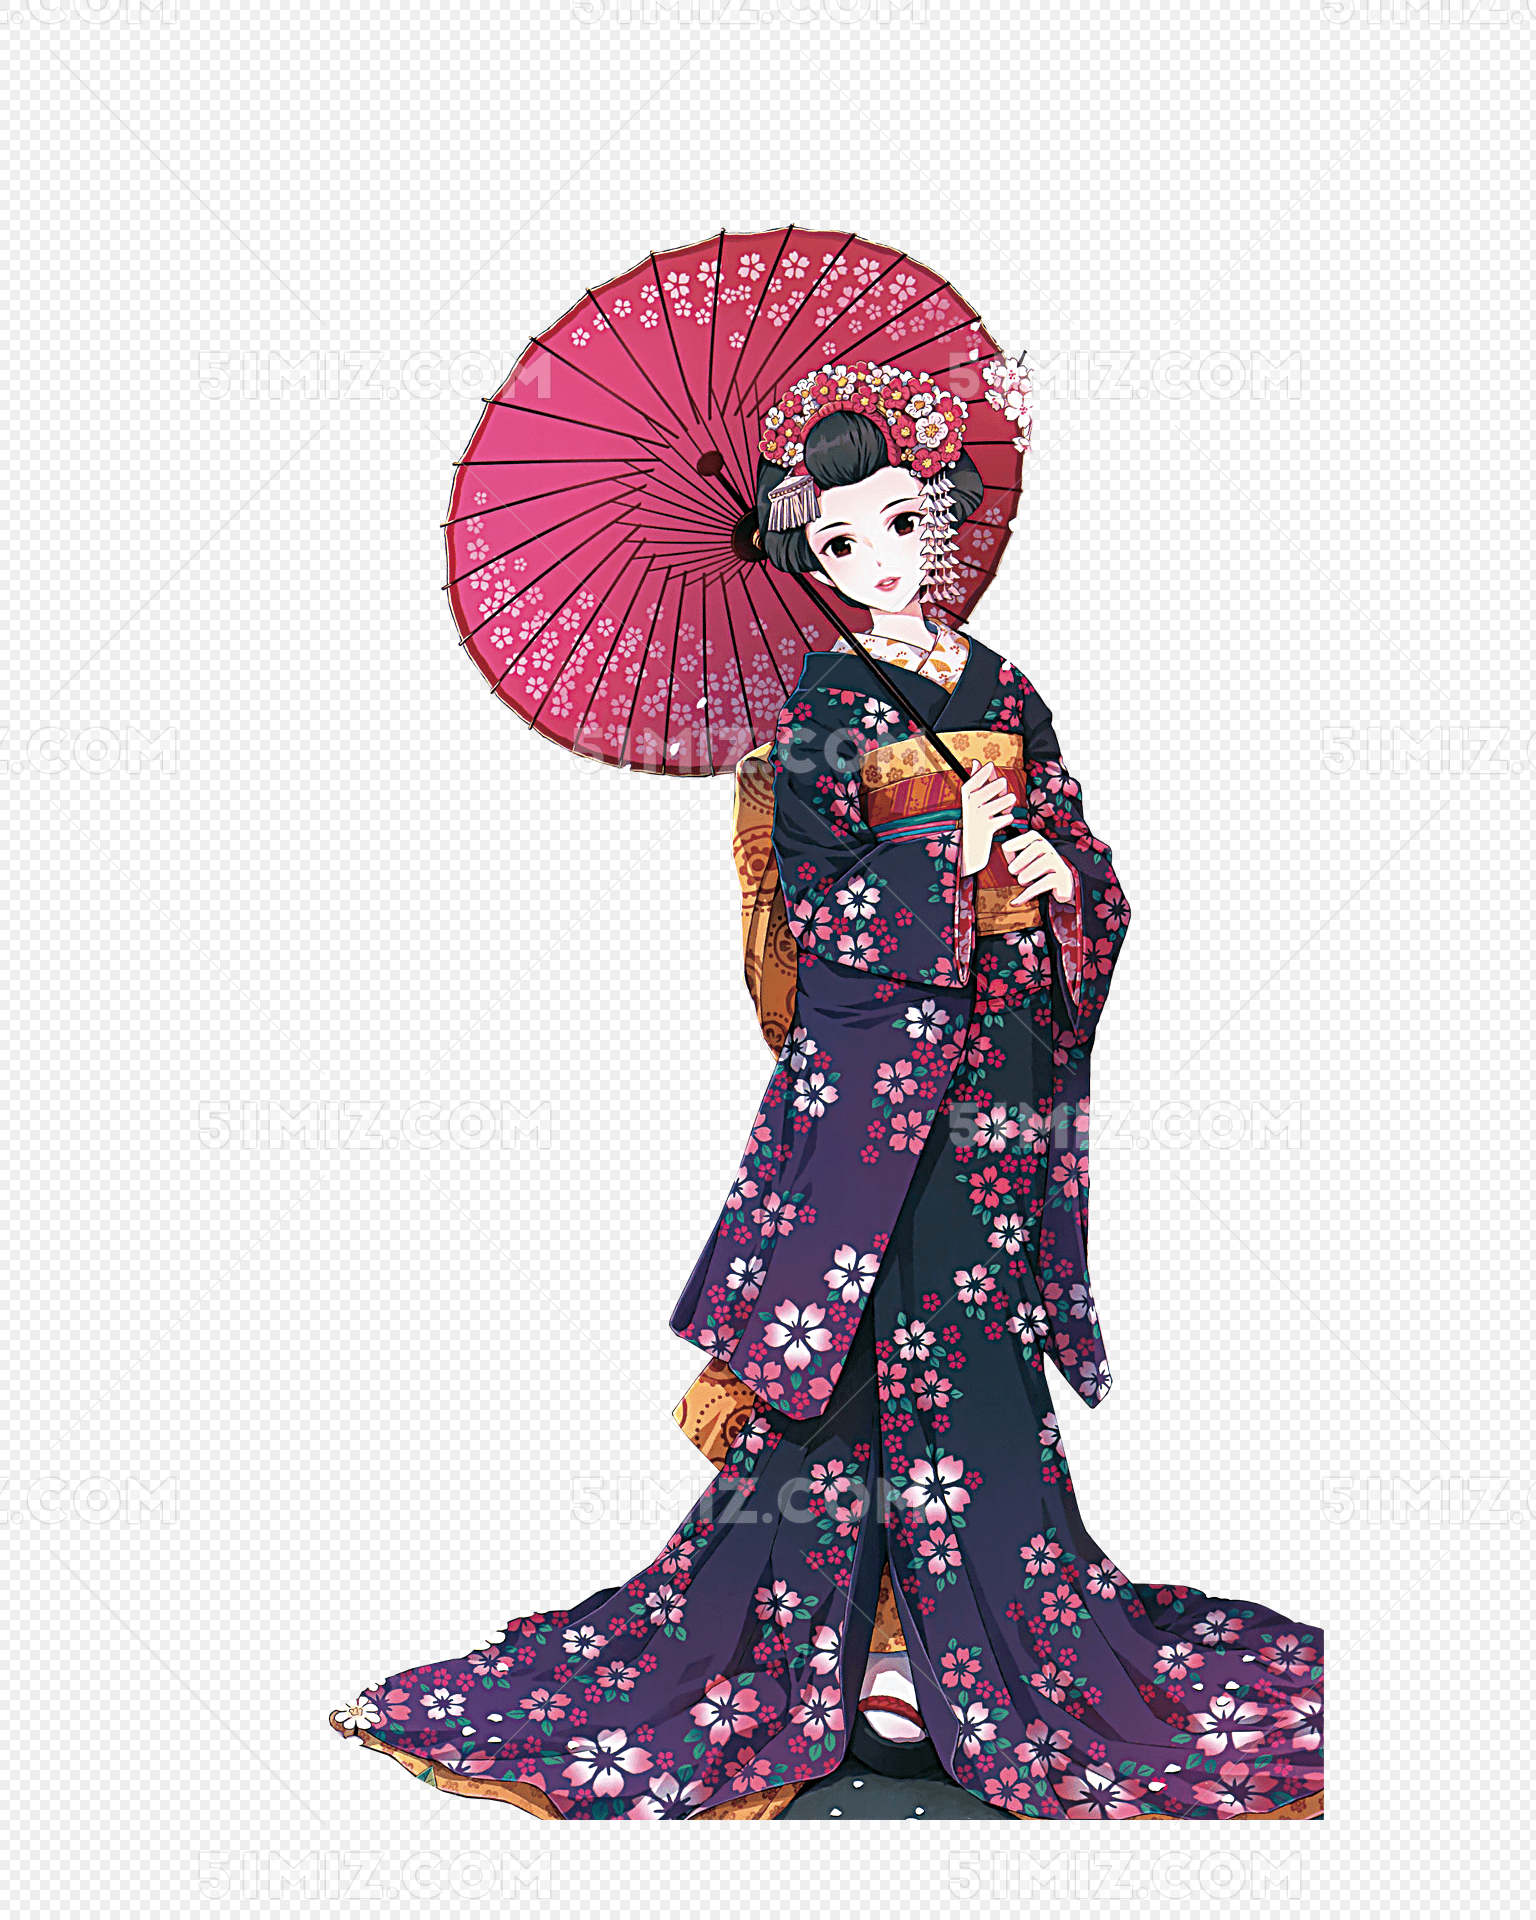 日本浴衣和服动漫美女壁纸 - 优美图库